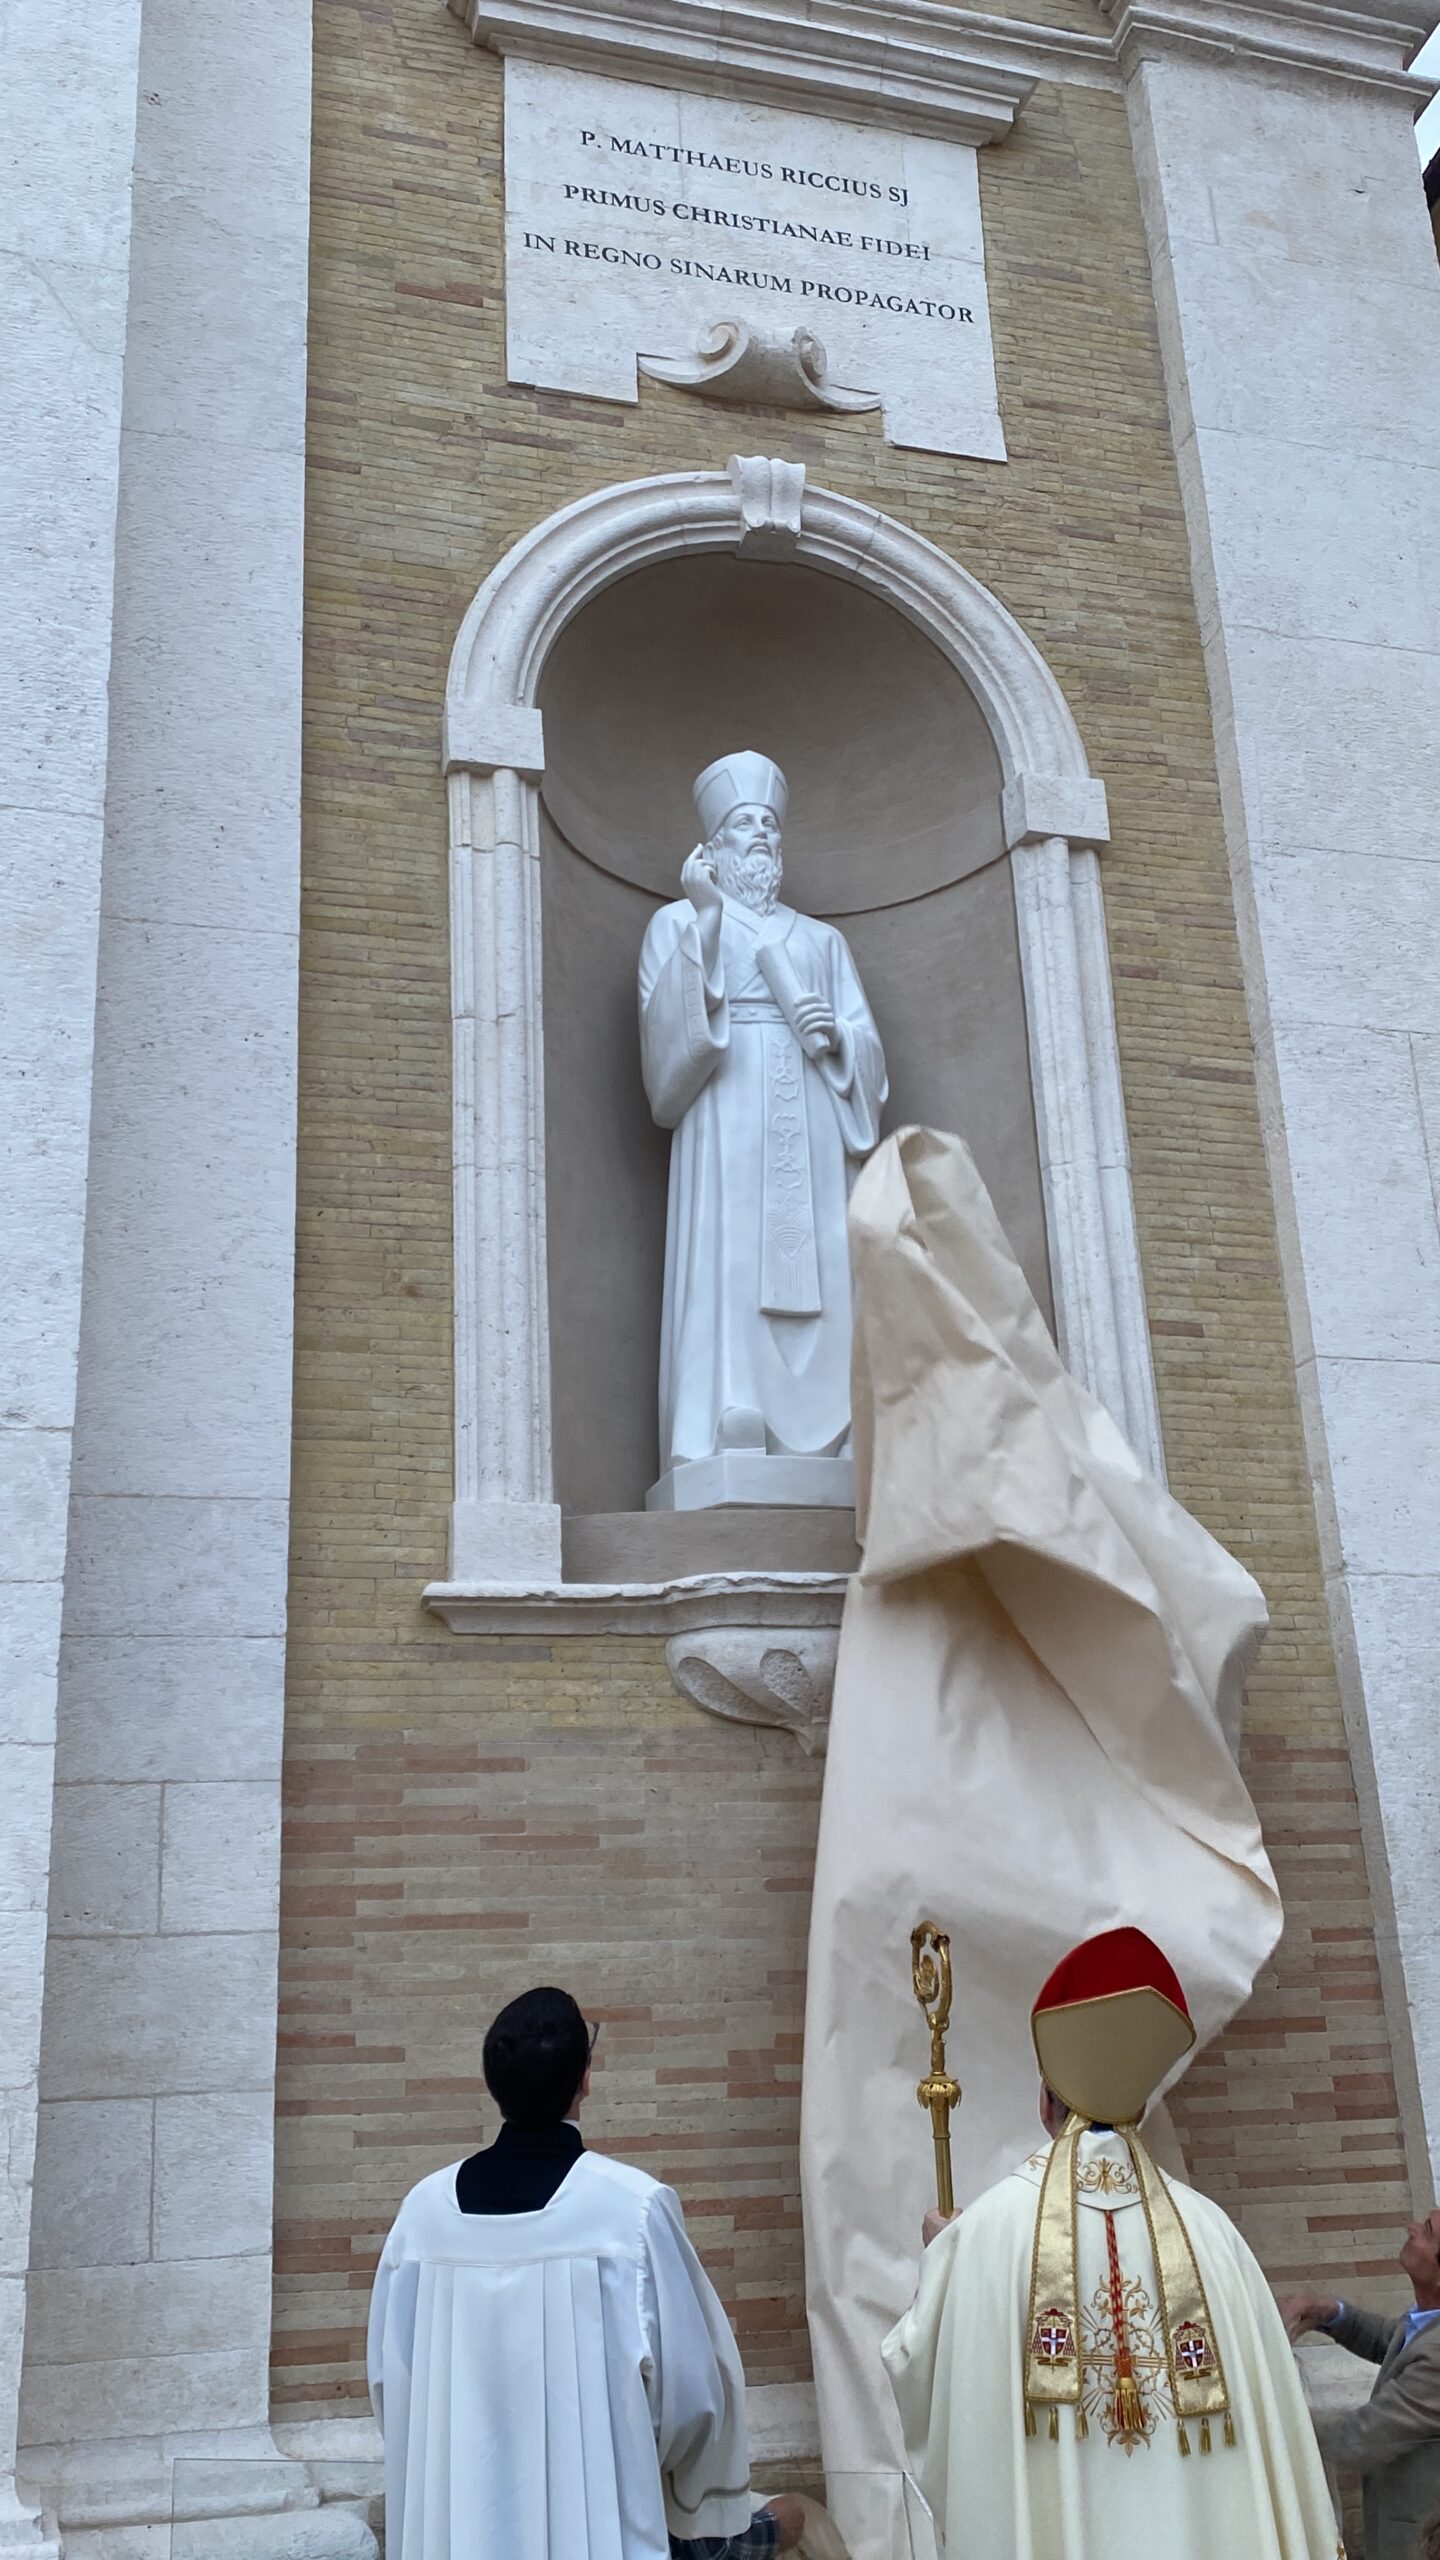 Innaugurazione statua P. M. Ricci – Parolin 01